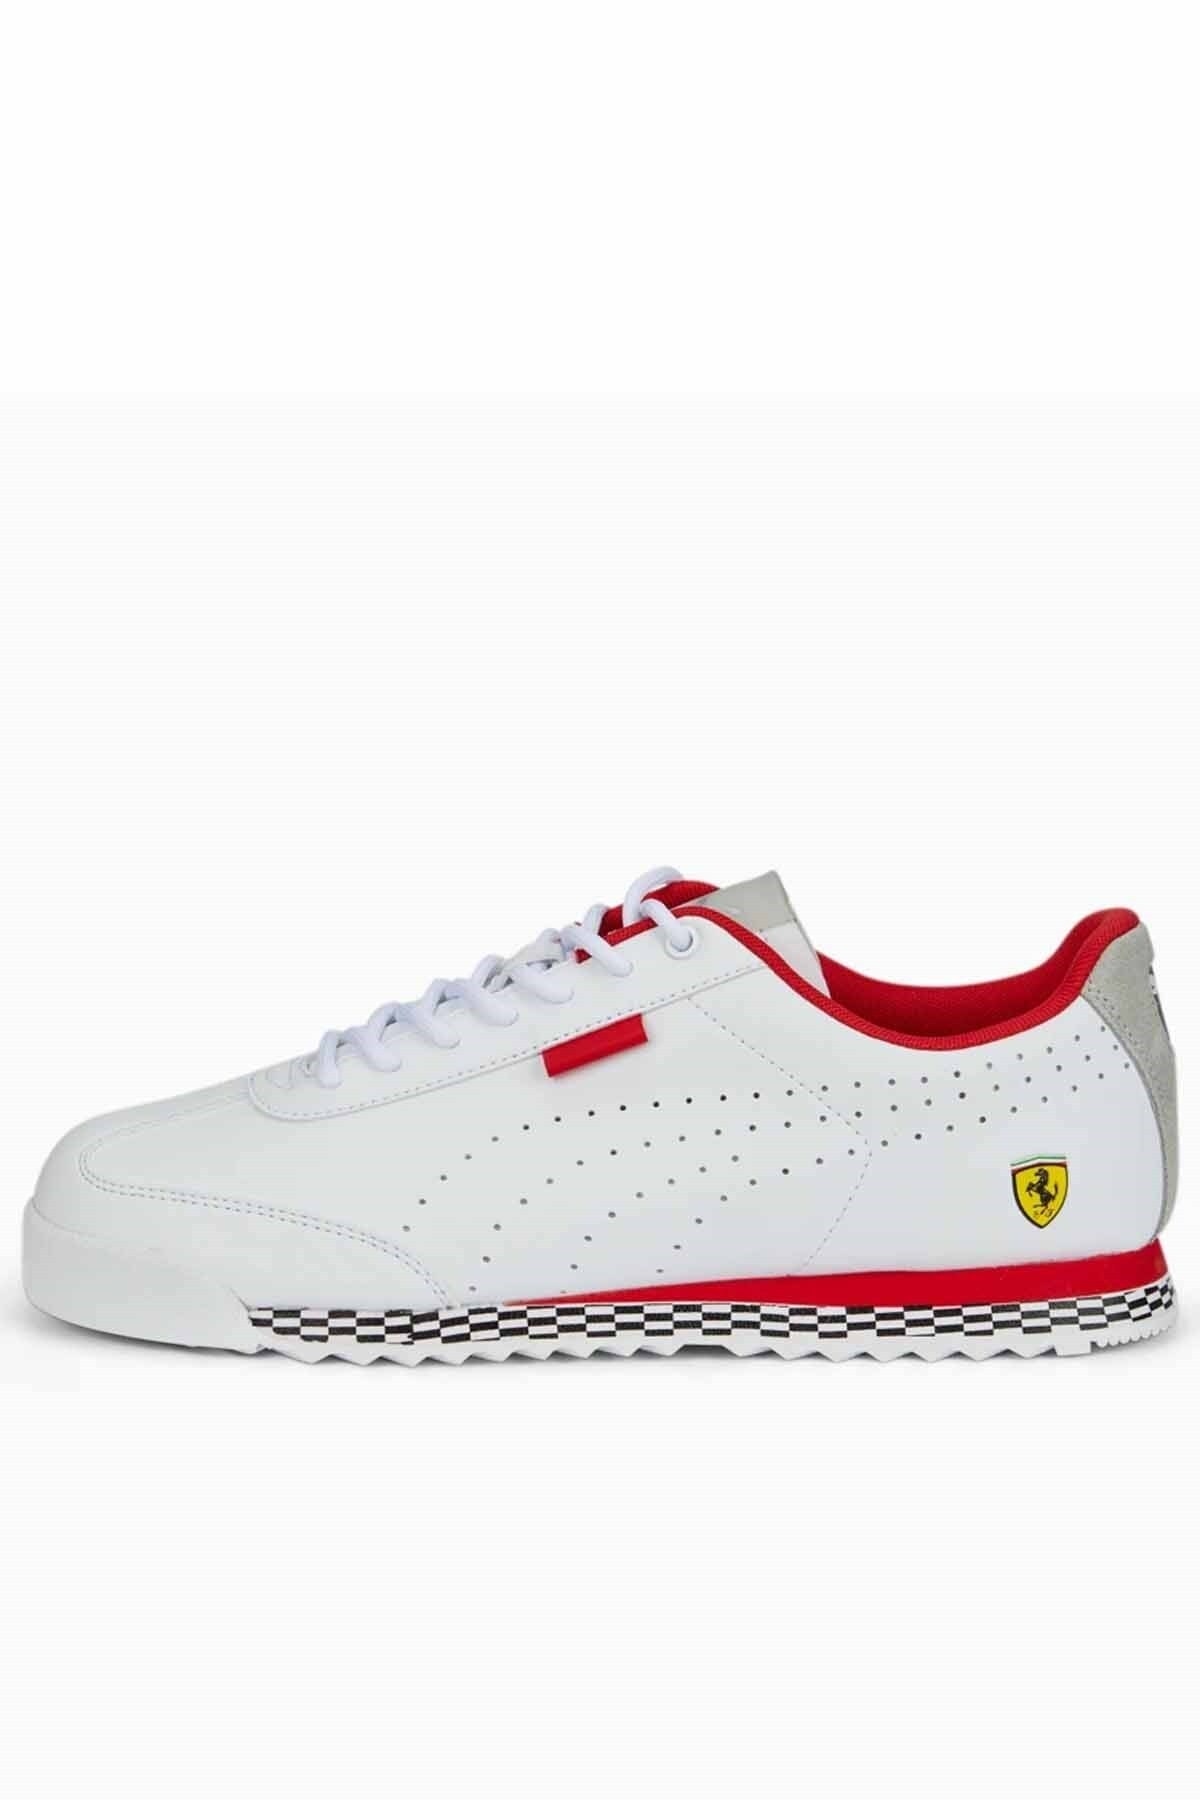 Puma Ferrari Roma Erkek Günlük Spor Ayakkabı 307032 04 Beyaz